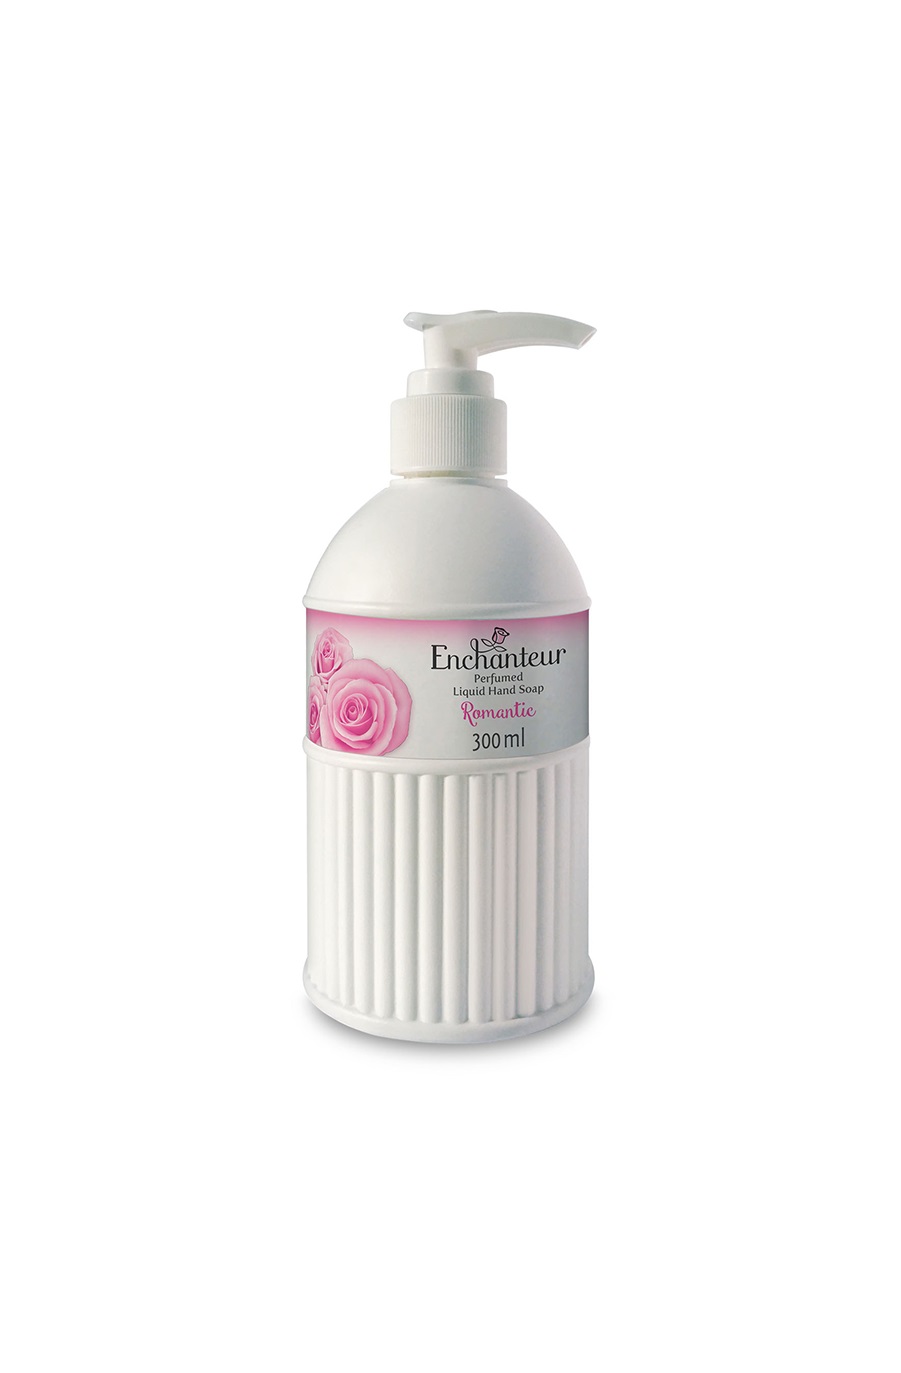 Enchanteur - Romantic Perfumed Liquid Hand Soap 300ml